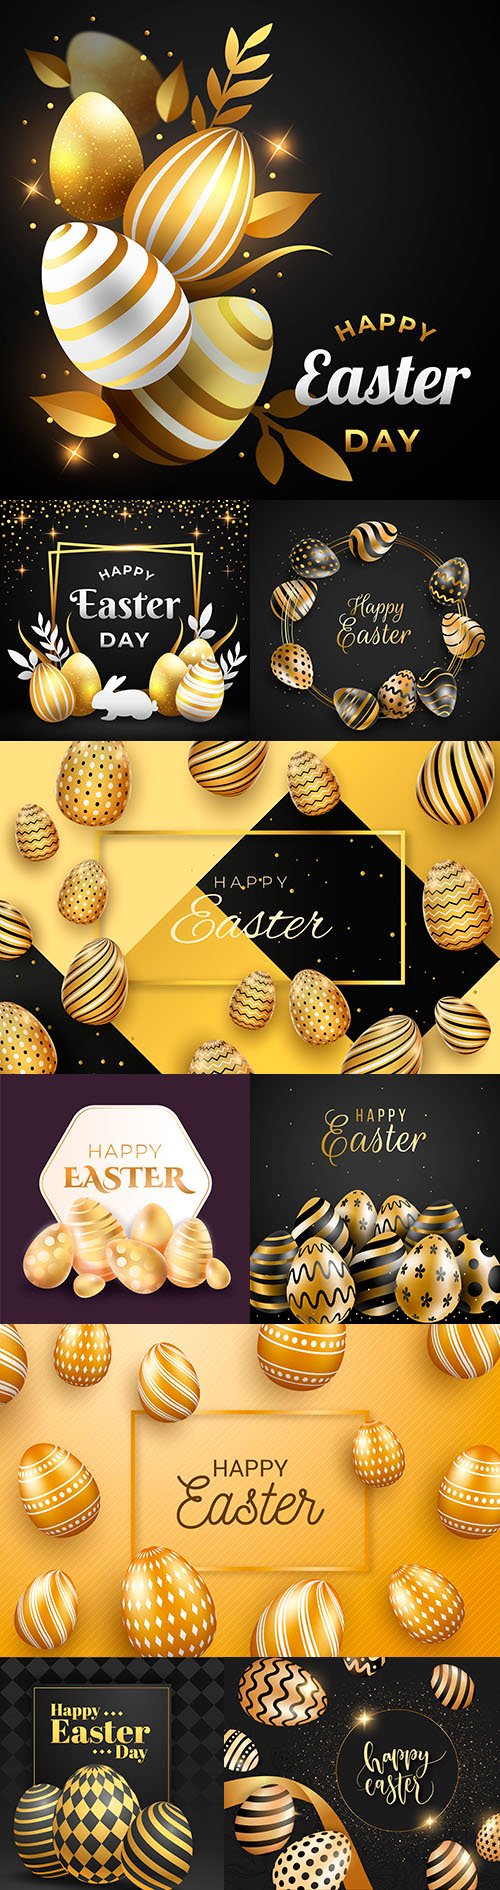 Happy Easter gold decorative illustration design 2